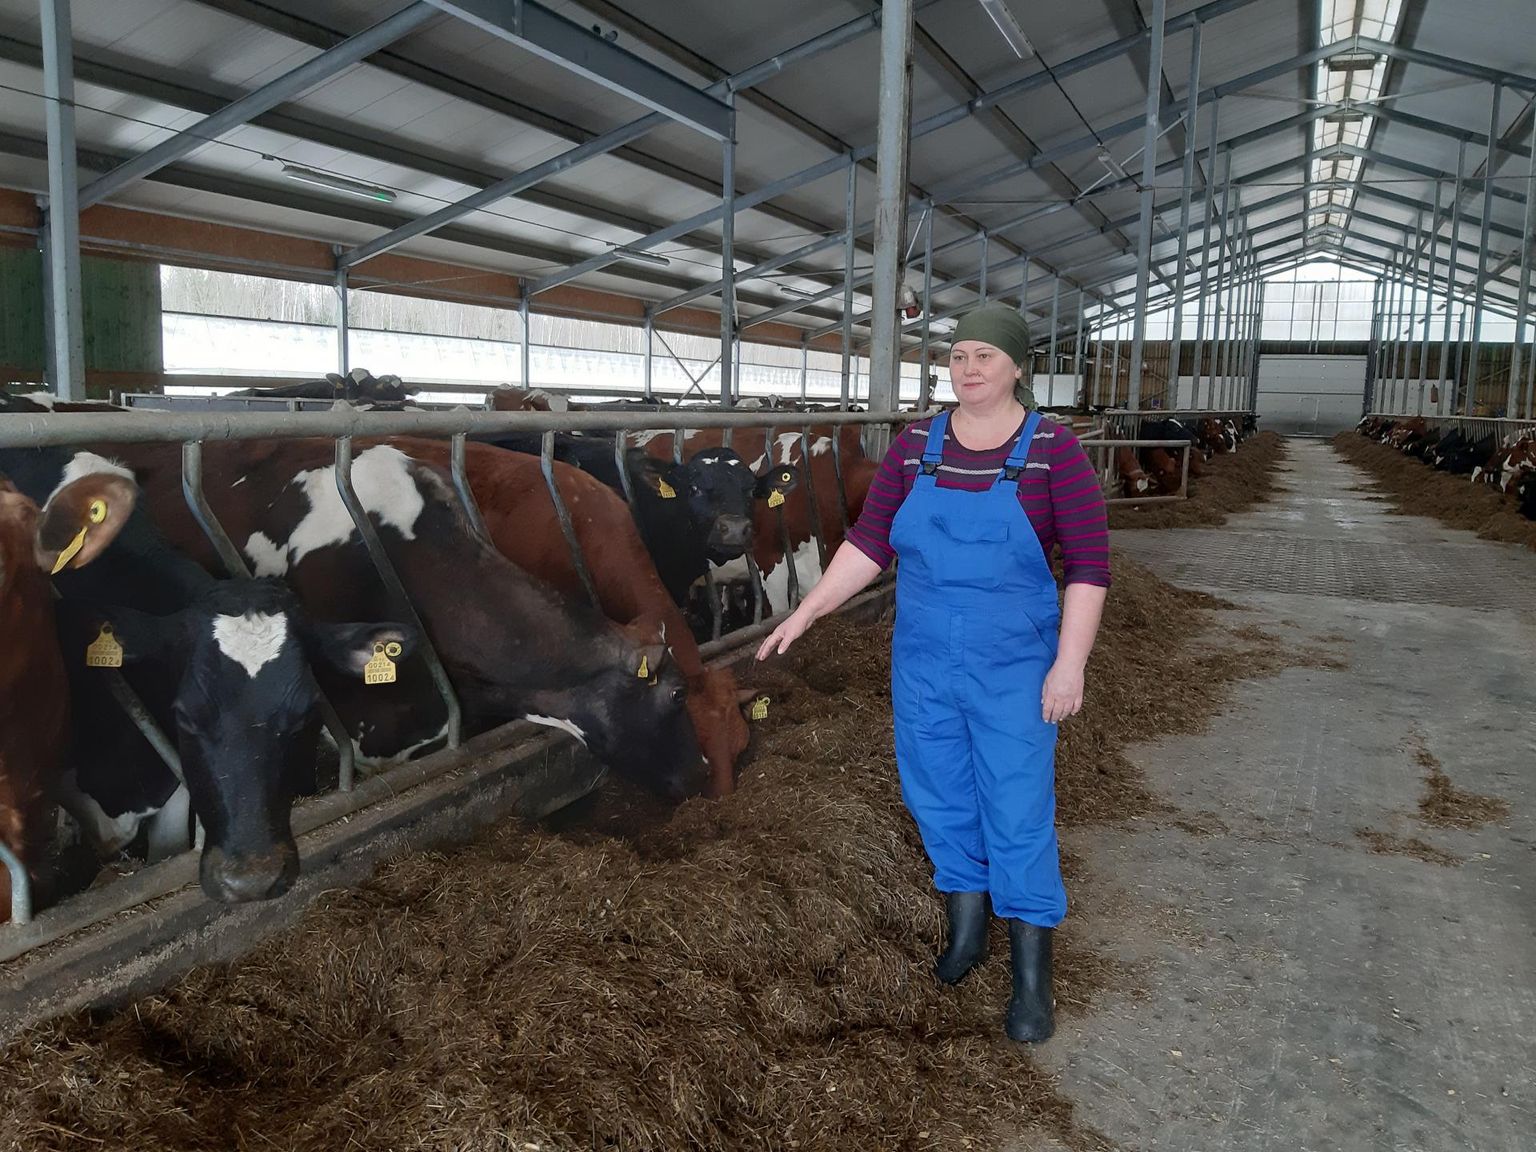 See ülesvõte Linnamäe farmis lehmadega askeldavast Olga Barabeist on tehtud kohe pärast sõja puhkemist 27. veebruaril 2022. Ta oli toona väga mures kodumaale jäänud laste pärast ja mõlemad mehega kippusid Ukrainasse tagasi. Lapsed palusid neil jääda turvalisse Eestisse ja nad on siin praegugi.